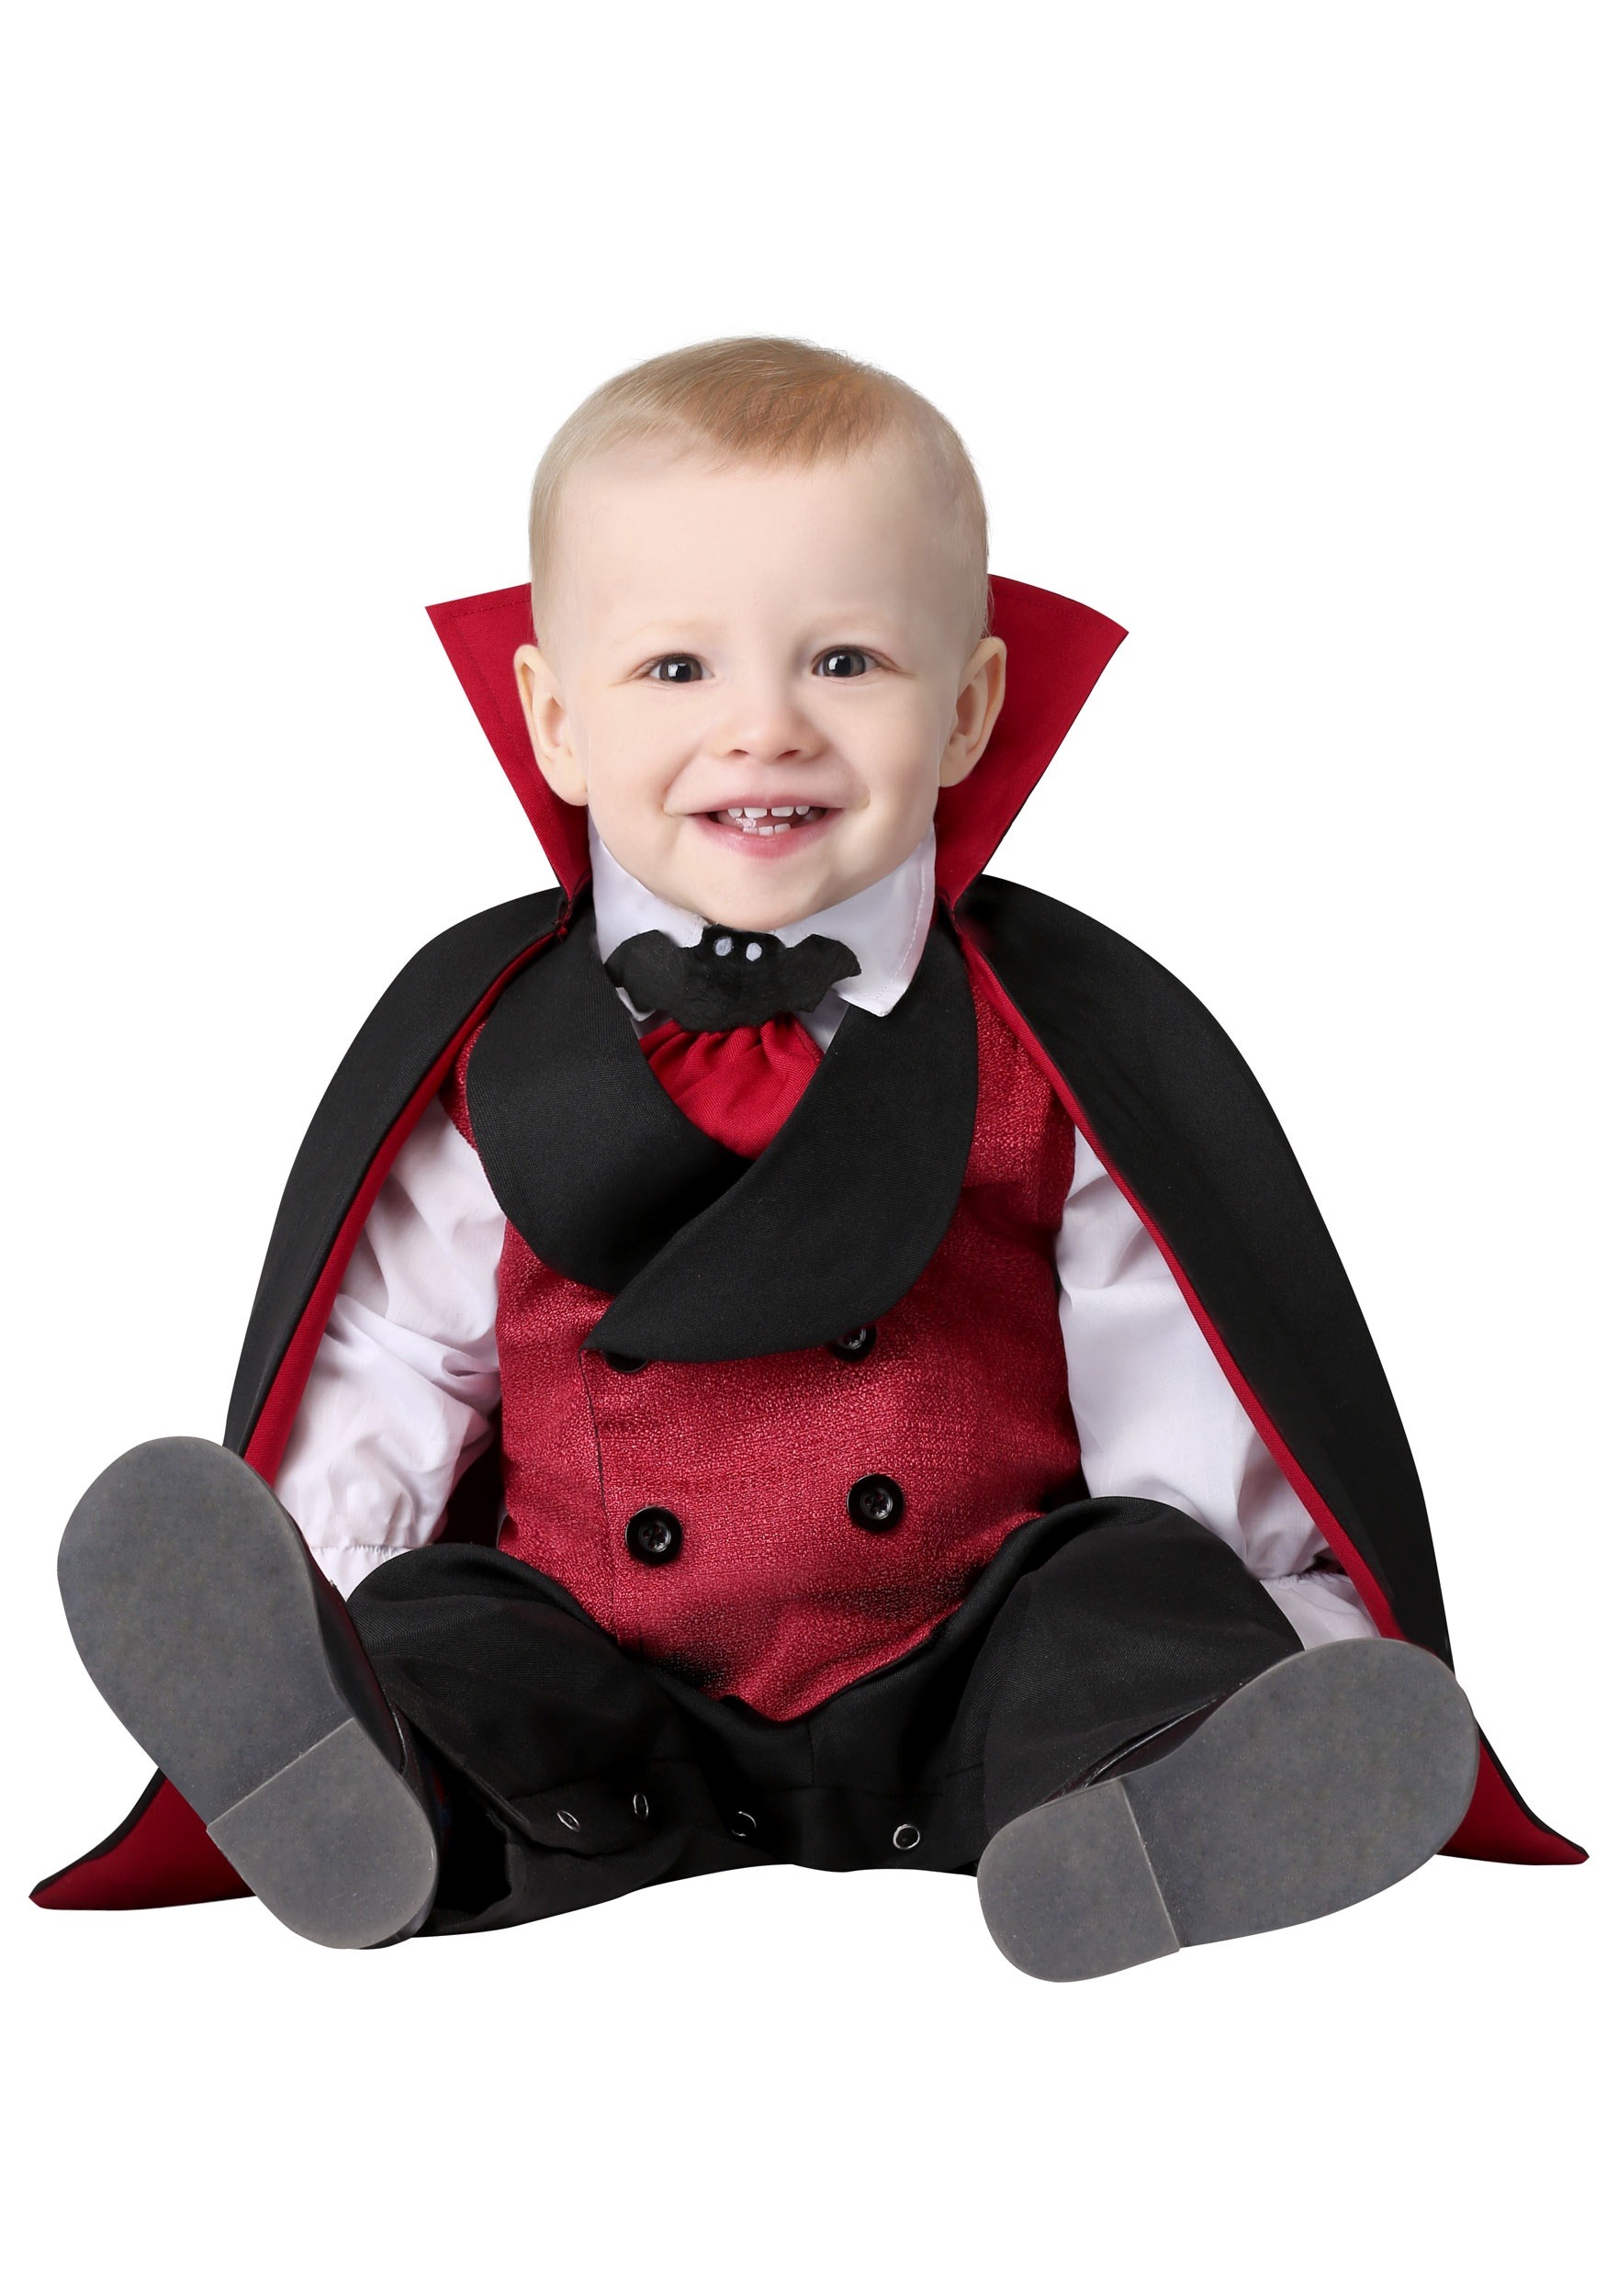 vampire costume baby boy